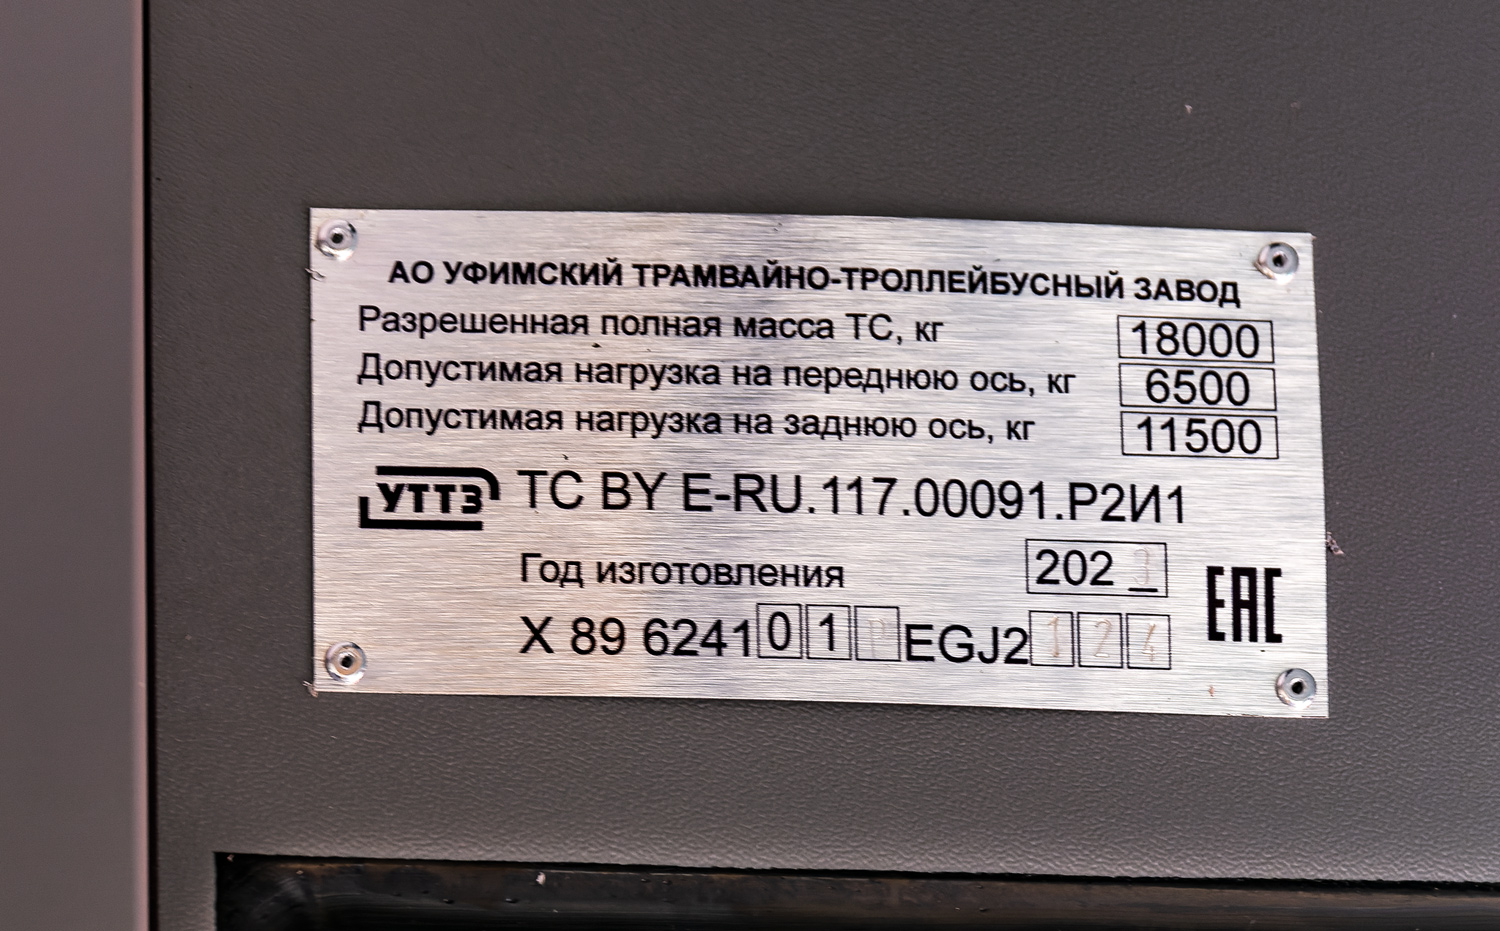 Ufa, UTTZ-6241.01 “Gorozhanin” № 1069; Ufa — Nameplates